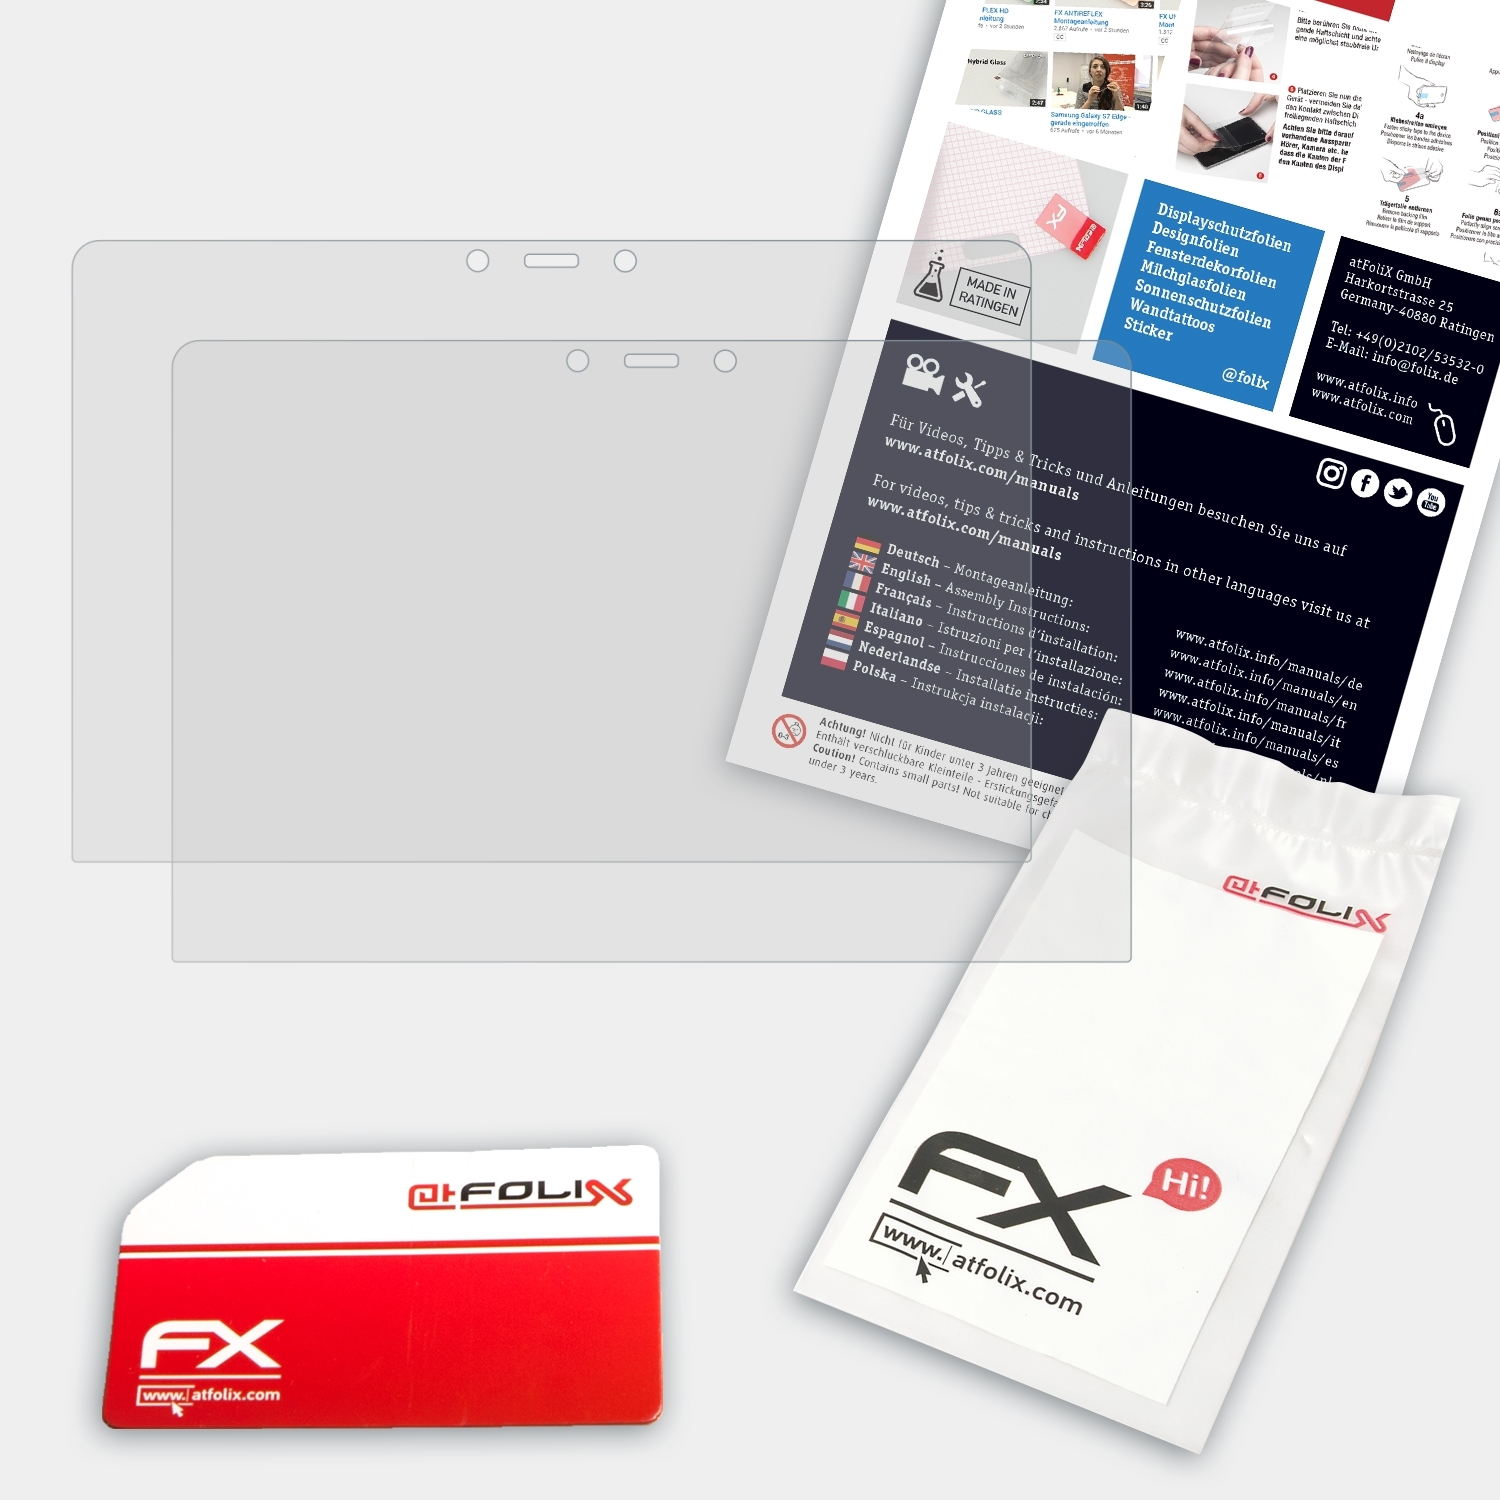 ATFOLIX 2x FX-Antireflex Displayschutz(für HP 14-ba013ng) Pavilion x360